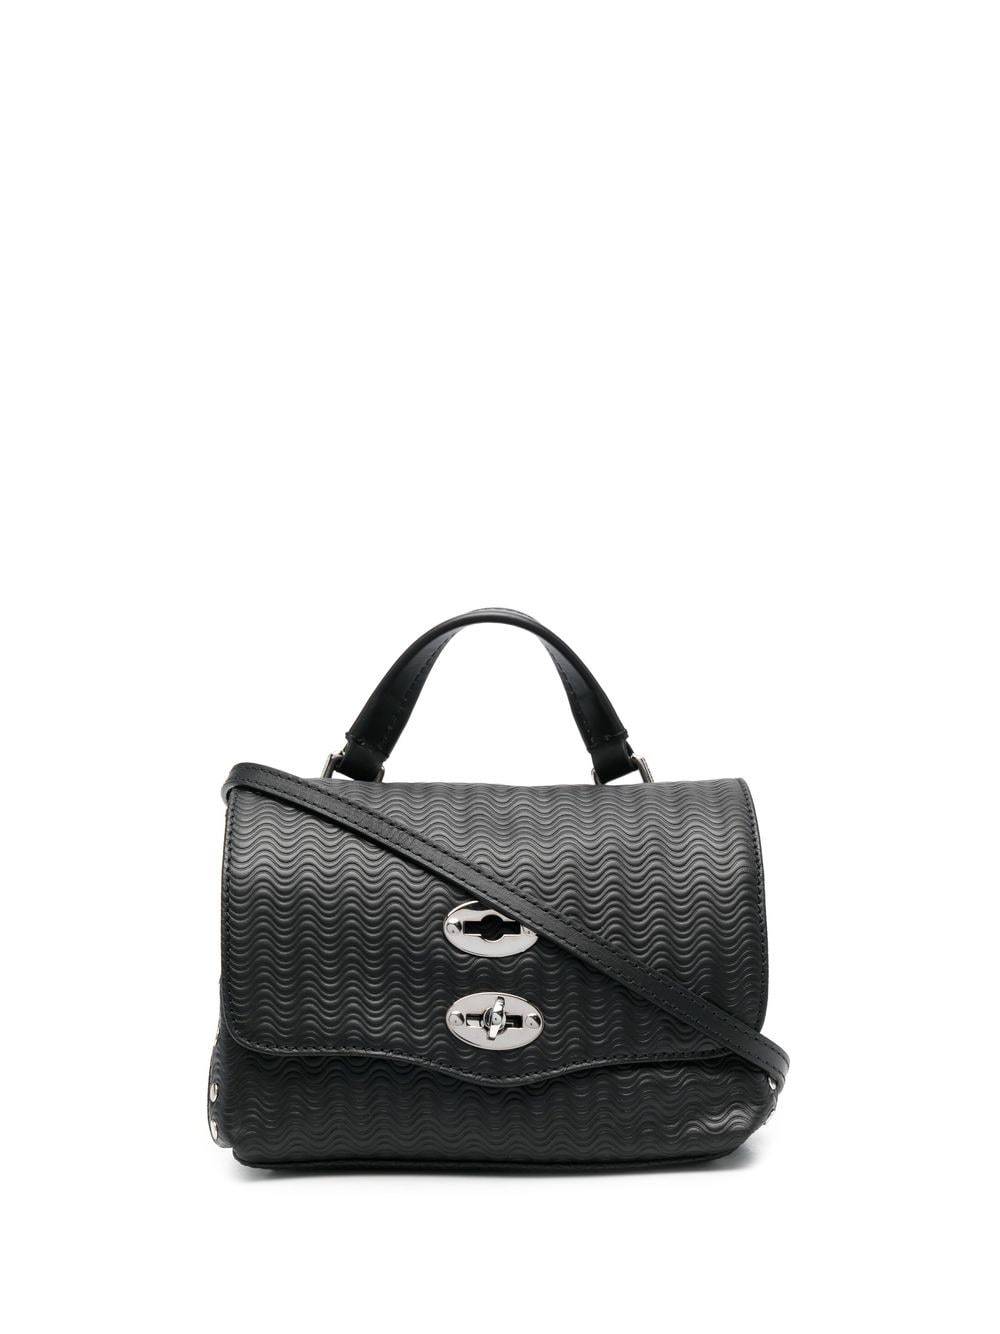 Zanellato leather twist-lock bag - Black von Zanellato